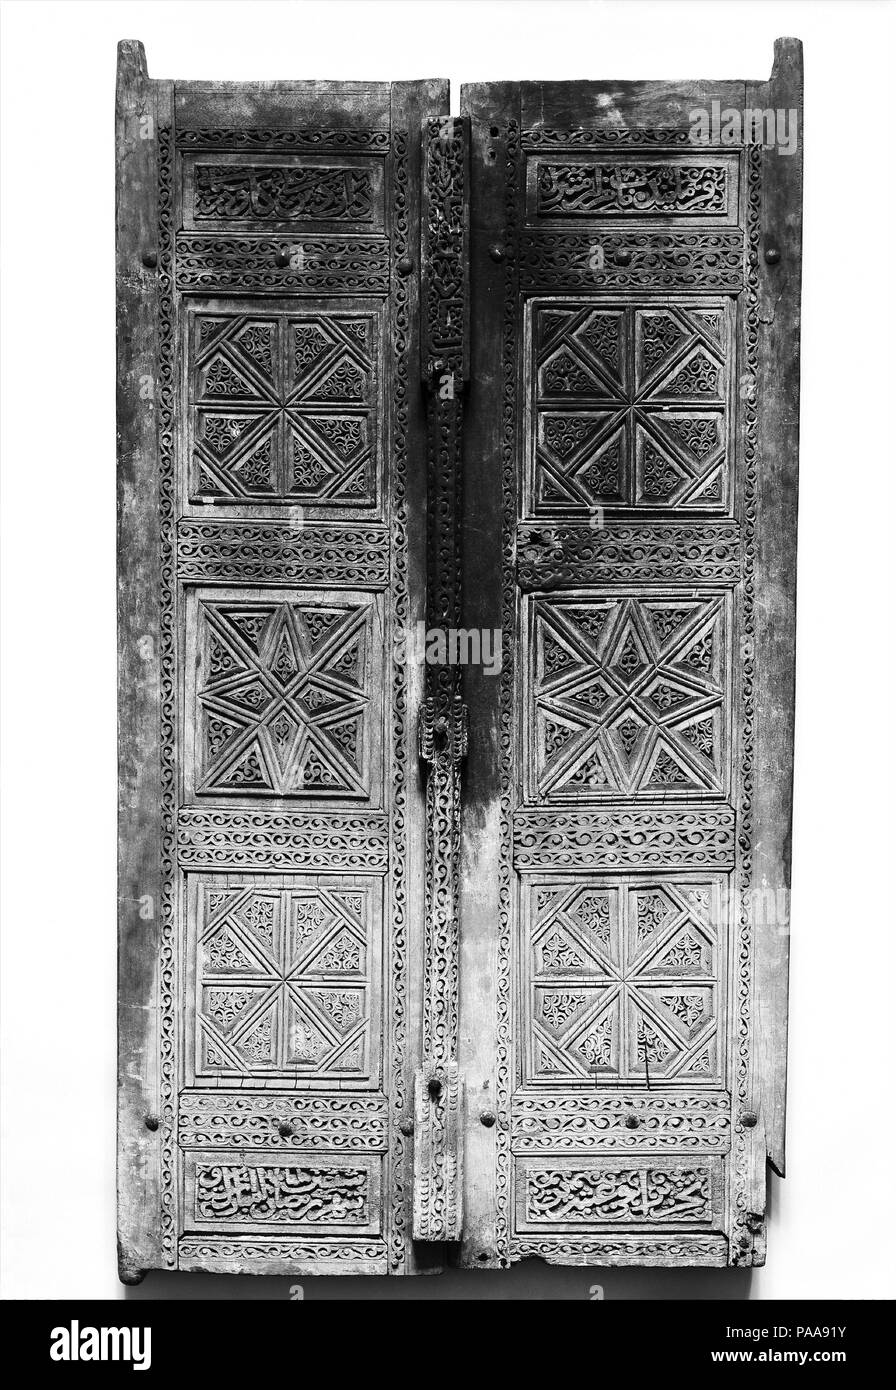 Paire de portes sculptées. Dimensions : H. 59 1/4 in. (150,5 cm) W. 32 in. (81,3 cm) Gr. D. 3 1/2 in. (8,9 cm) WT. 48 lbs (21,8 kg). Date : du 1466. Ces portes en teck se composent de plusieurs panneaux épigraphiques décoratifs et réunis et insérés dans un cadre. La paire de panneaux avec des dessins géométriques sculptés boiseries iranien reflète du xve siècle. Un cénotaphe, datée du 1473, aujourd'hui au Musée de l'Art, Rhode Island School of Design, affiche très semblables dessins et inscriptions. Le défilement des panneaux ossature vignes et sur la barre verticale partager qualités avec motifs vagues vu en Ti Banque D'Images